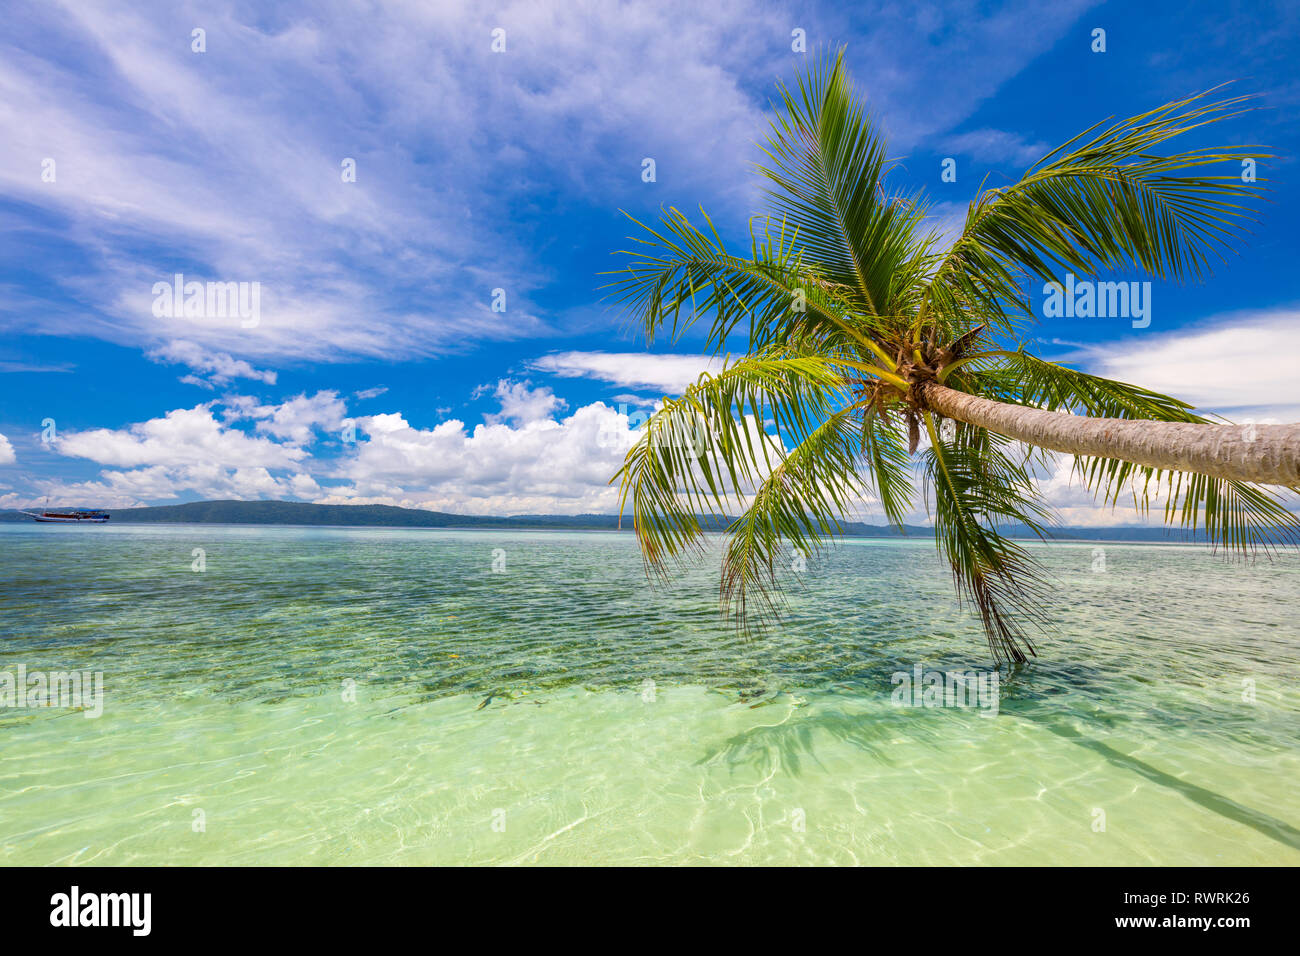 Tropicale idilliaco resto - mare calmo surf, palme e cielo blu. Tropical Beach sull'isola da sola. Nessuno. Indonesia Foto Stock